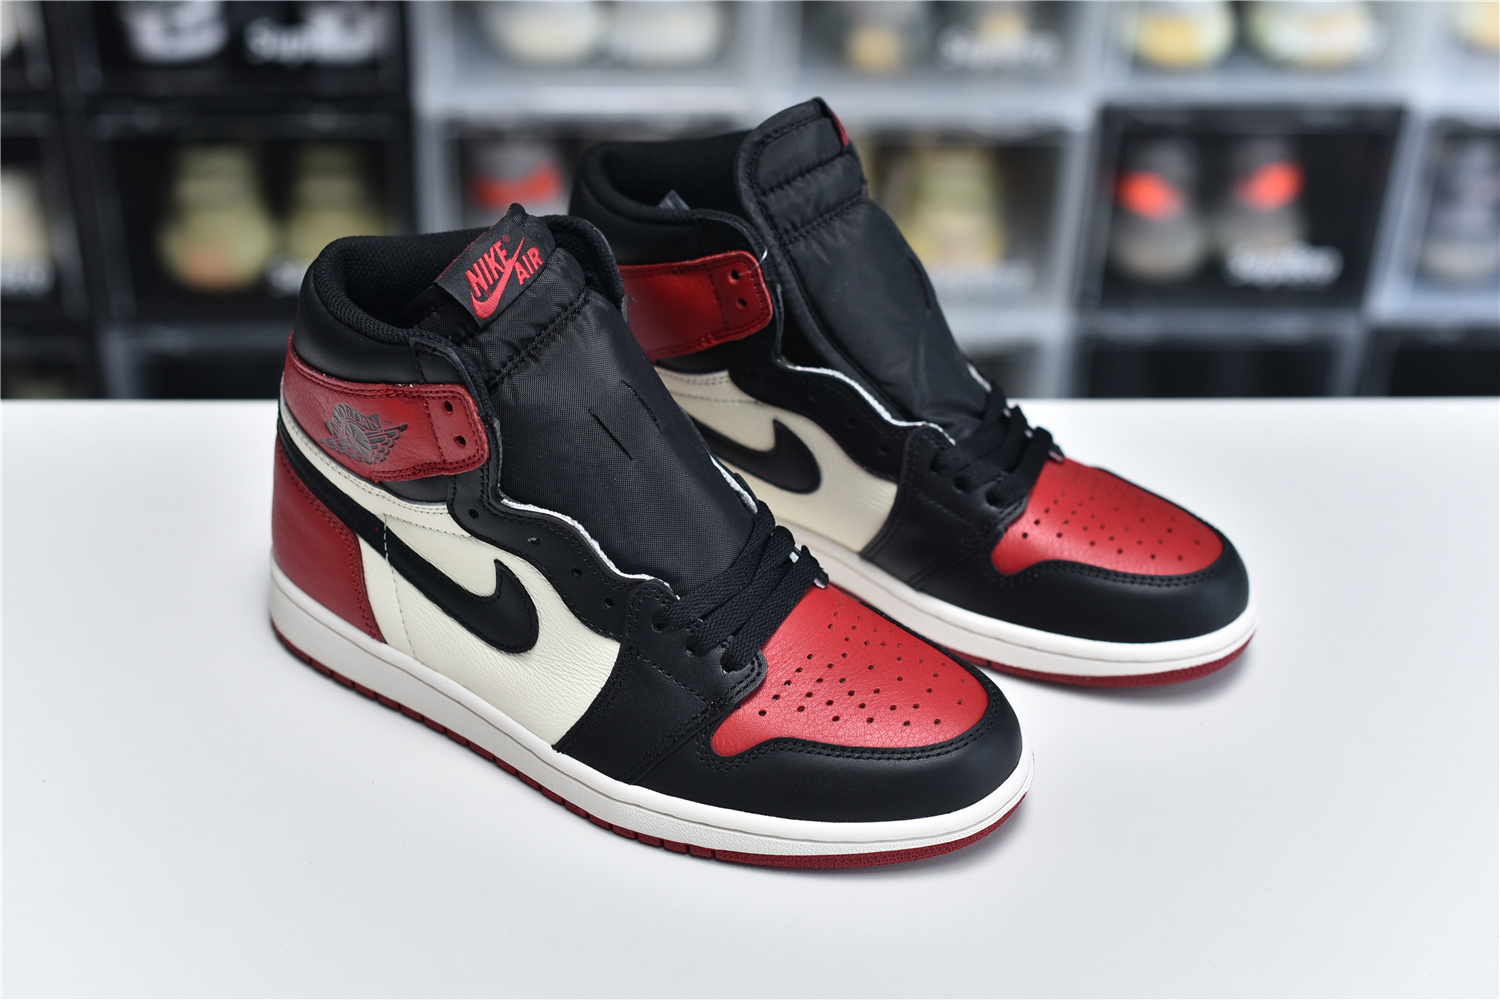 Nike Air Jordan 1 Retro High Og Red Black White Men Sneakers 555088 610 Kickbulk 9 - www.kickbulk.co